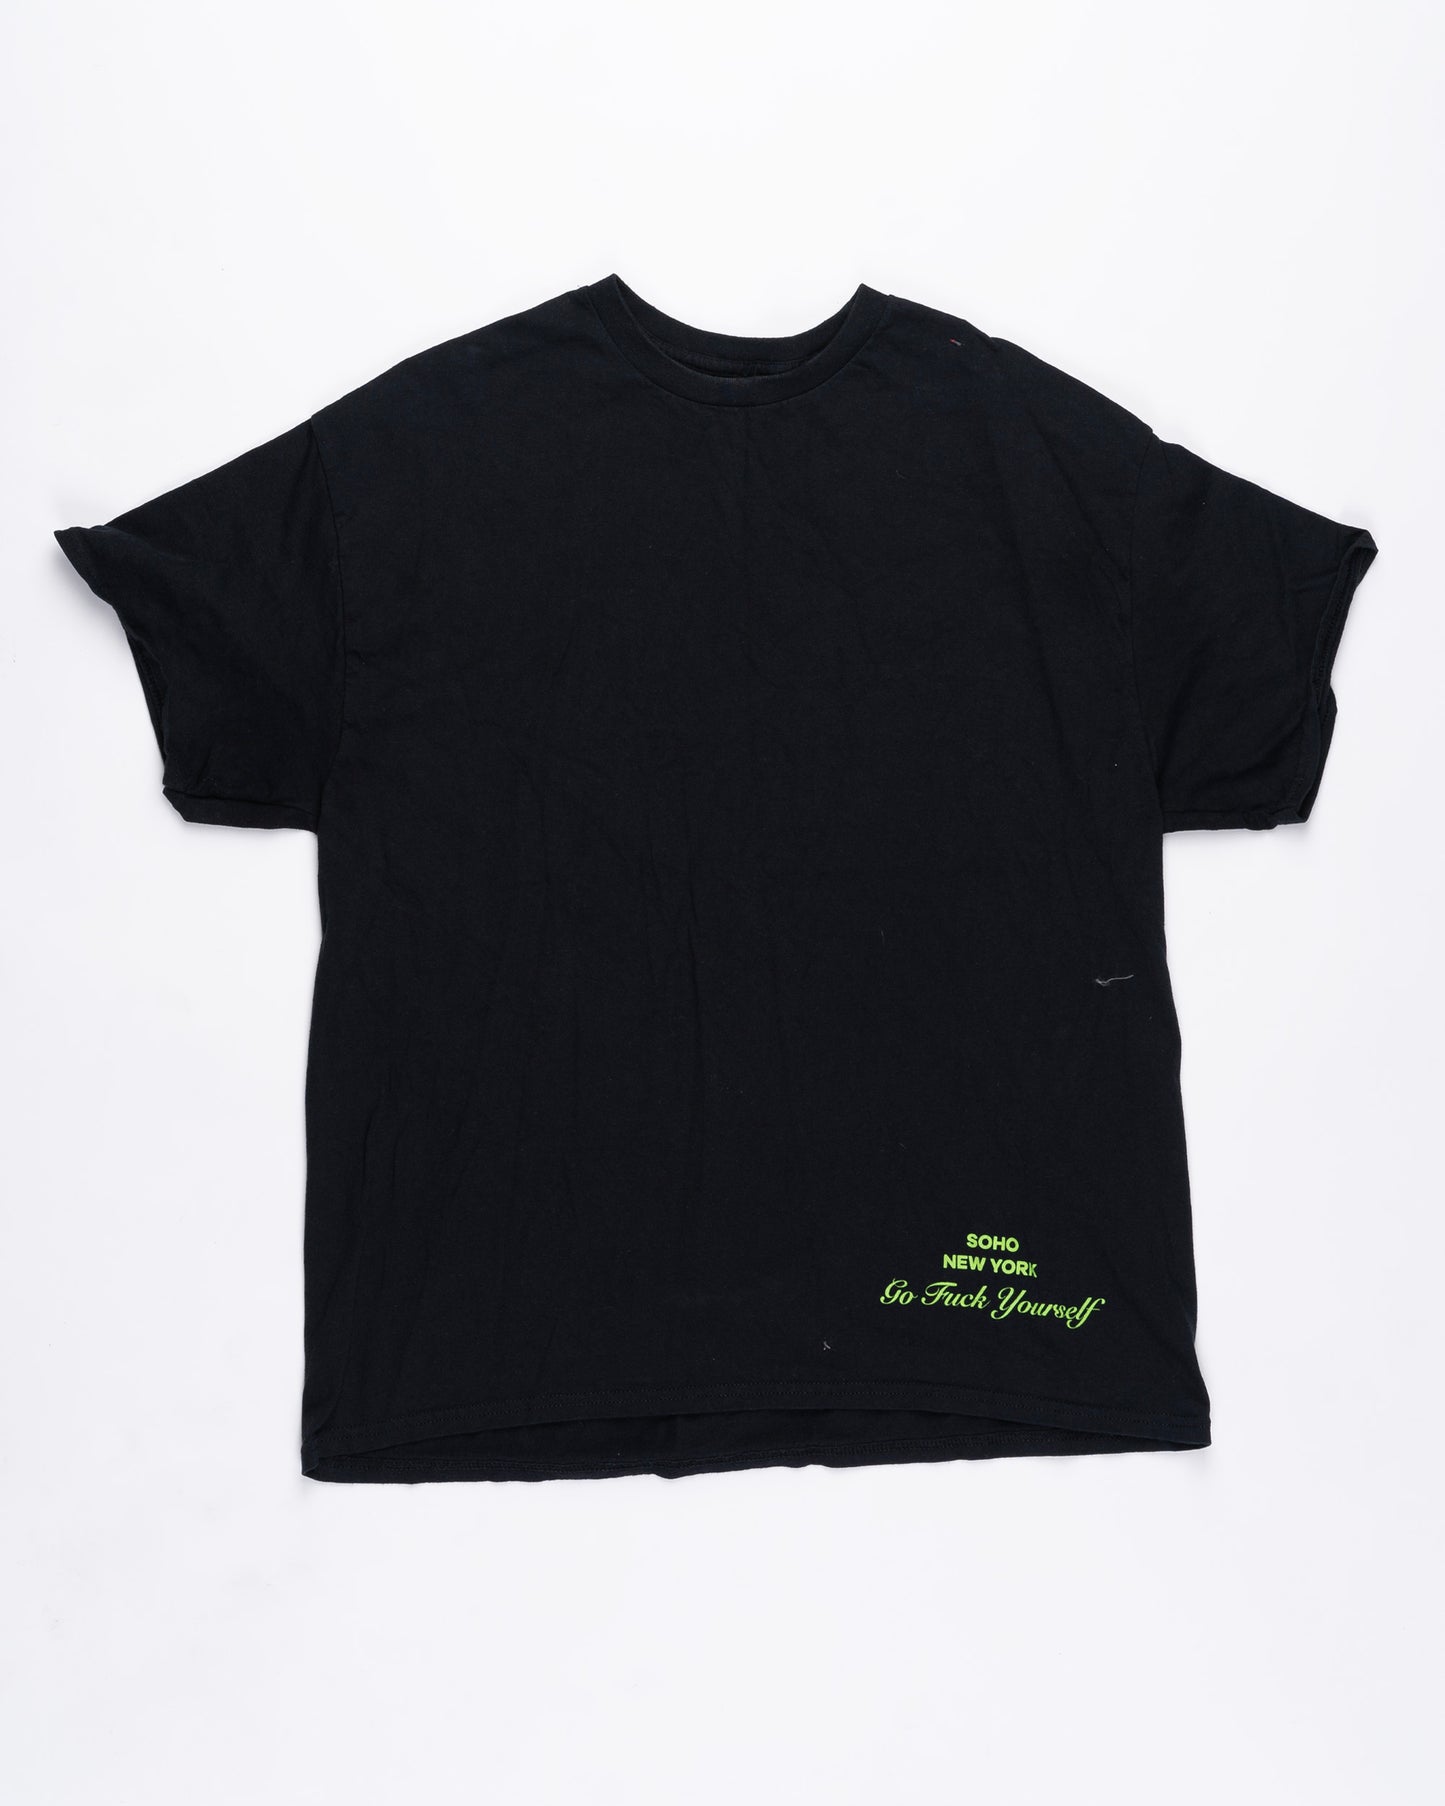 Black T-Shirt Size: XLarge